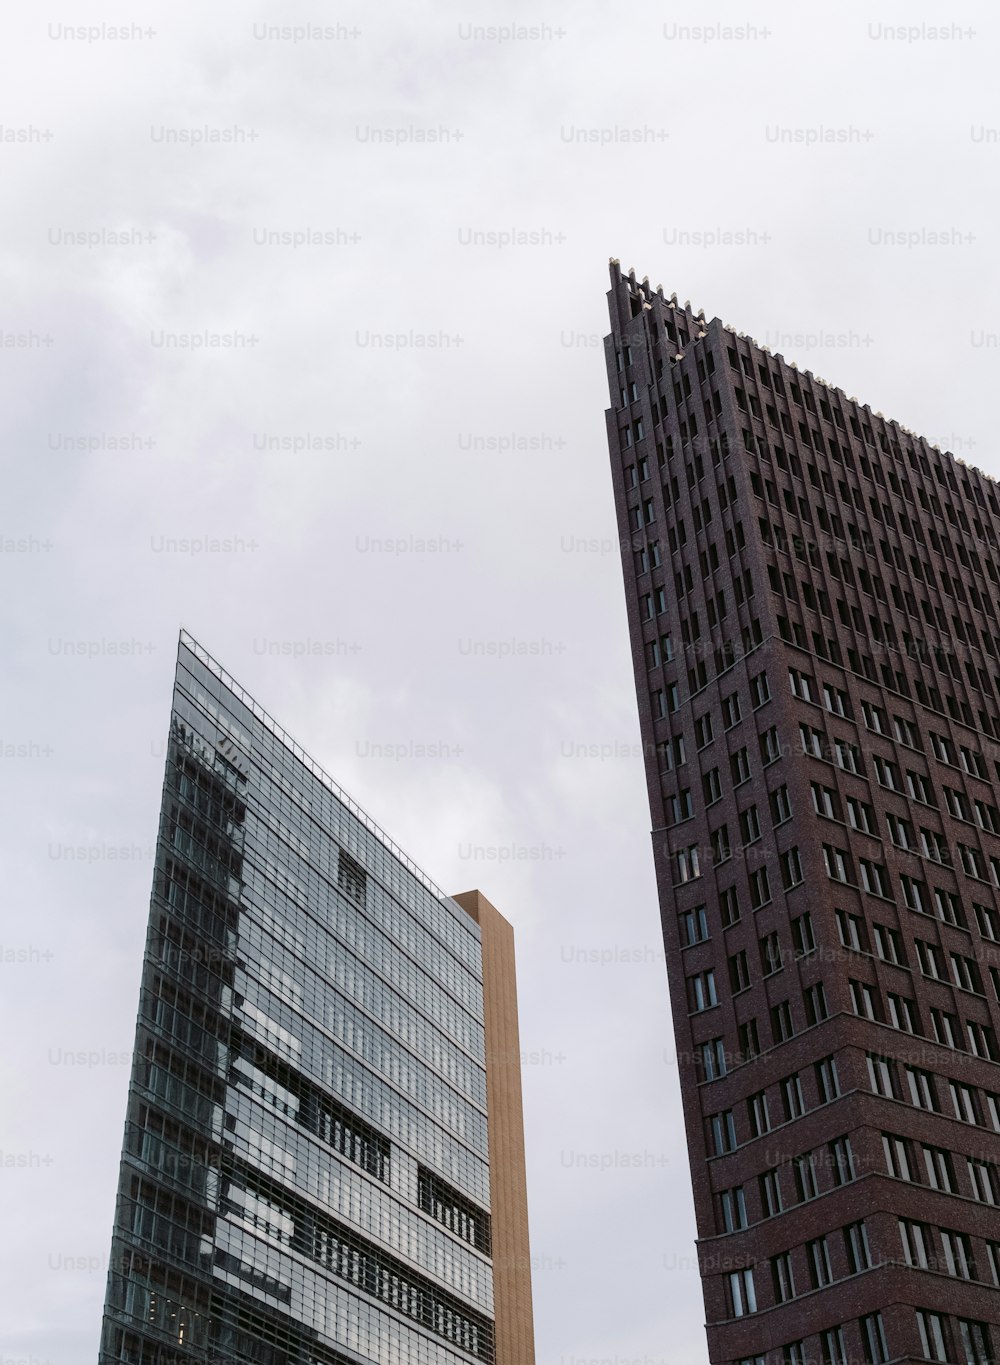 나란히 앉아있는 두 개의 고층 건물